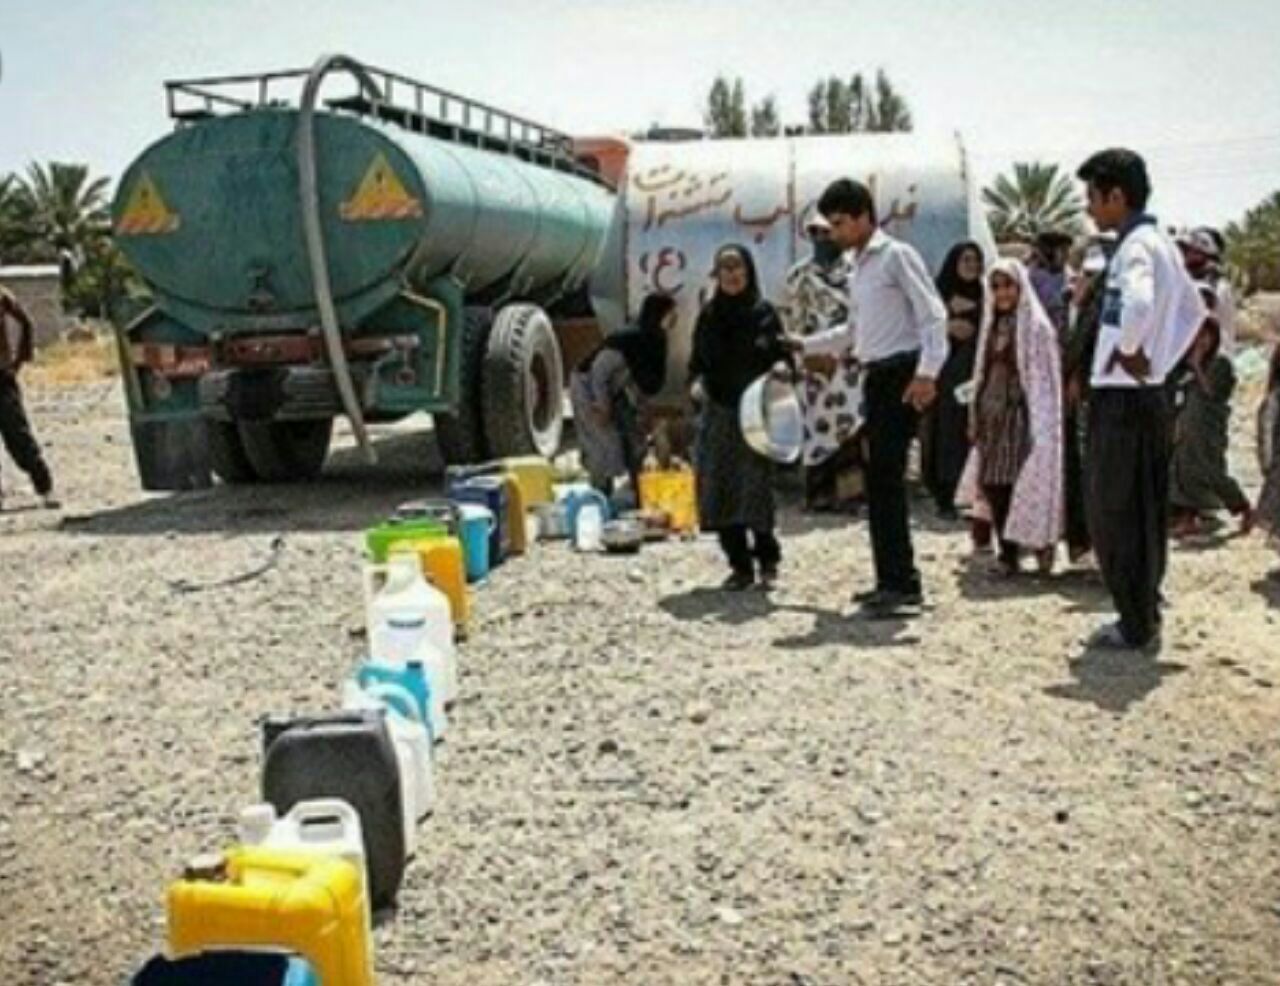 وضعیت امروز خوزستان نه فقط یک مشکل منطقه ای و موردی بلکه نمادی از ناکارآمدی سیستم مدیریتی است